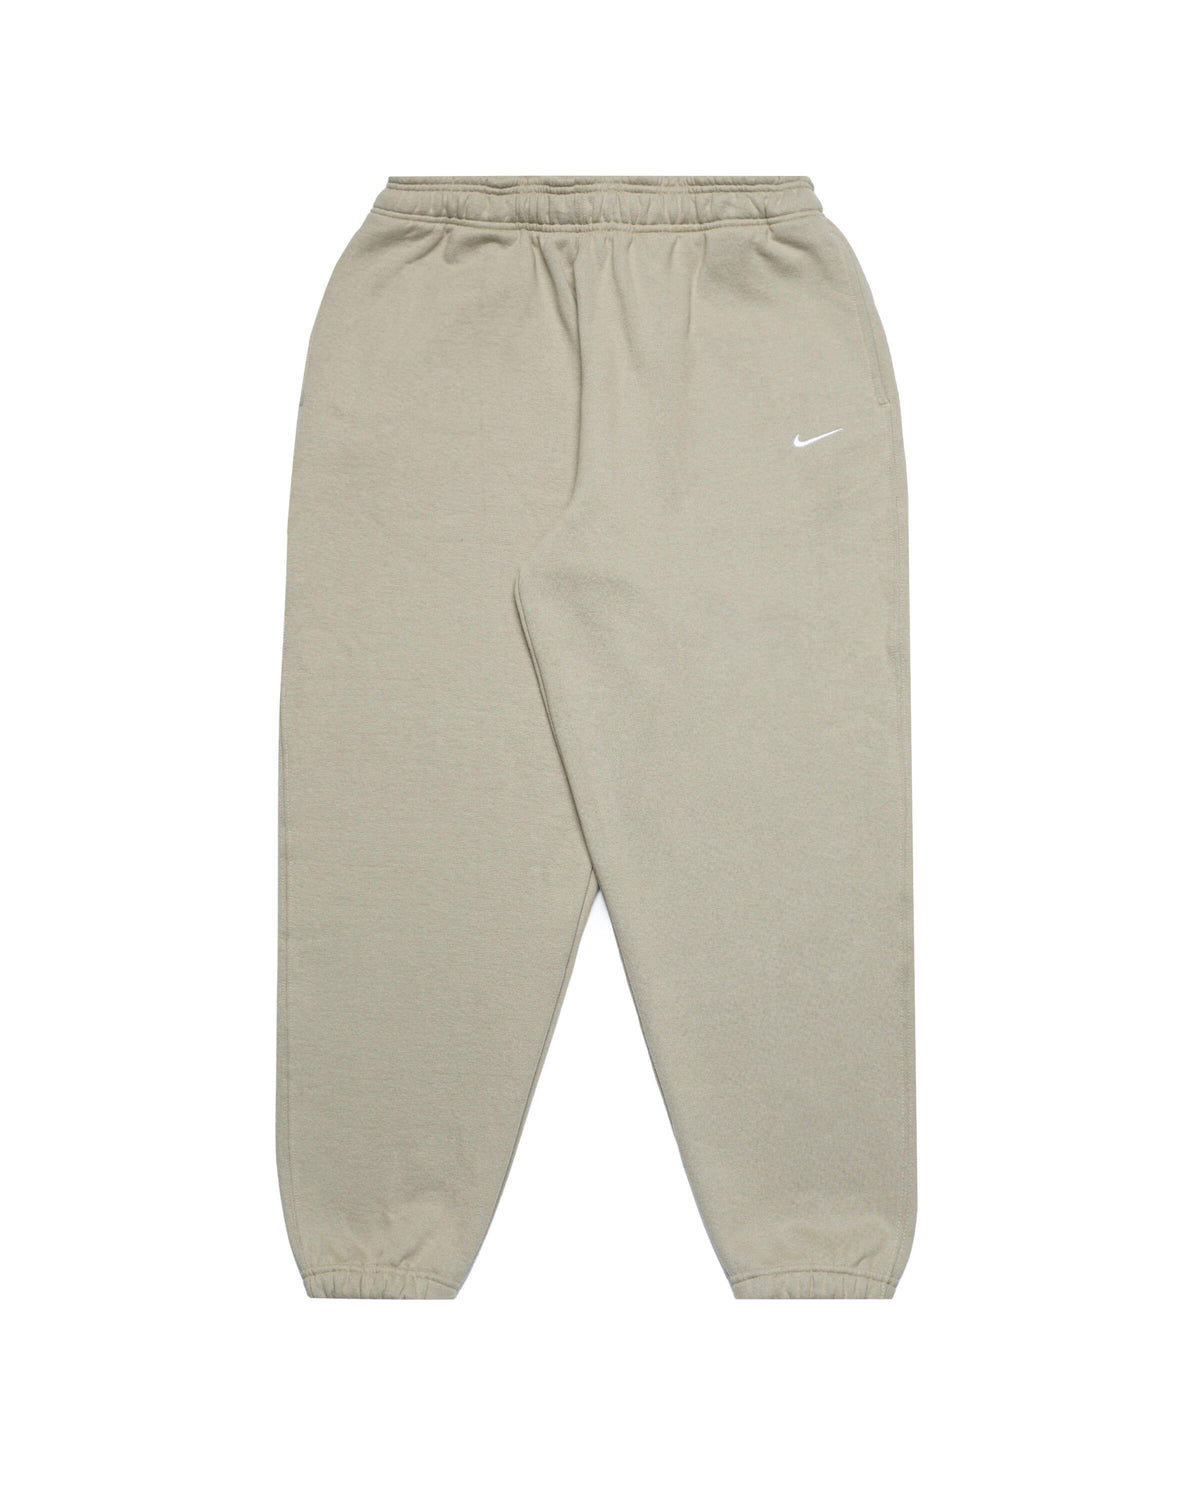 Nike NRG "Made in the USA" Fleece Pants